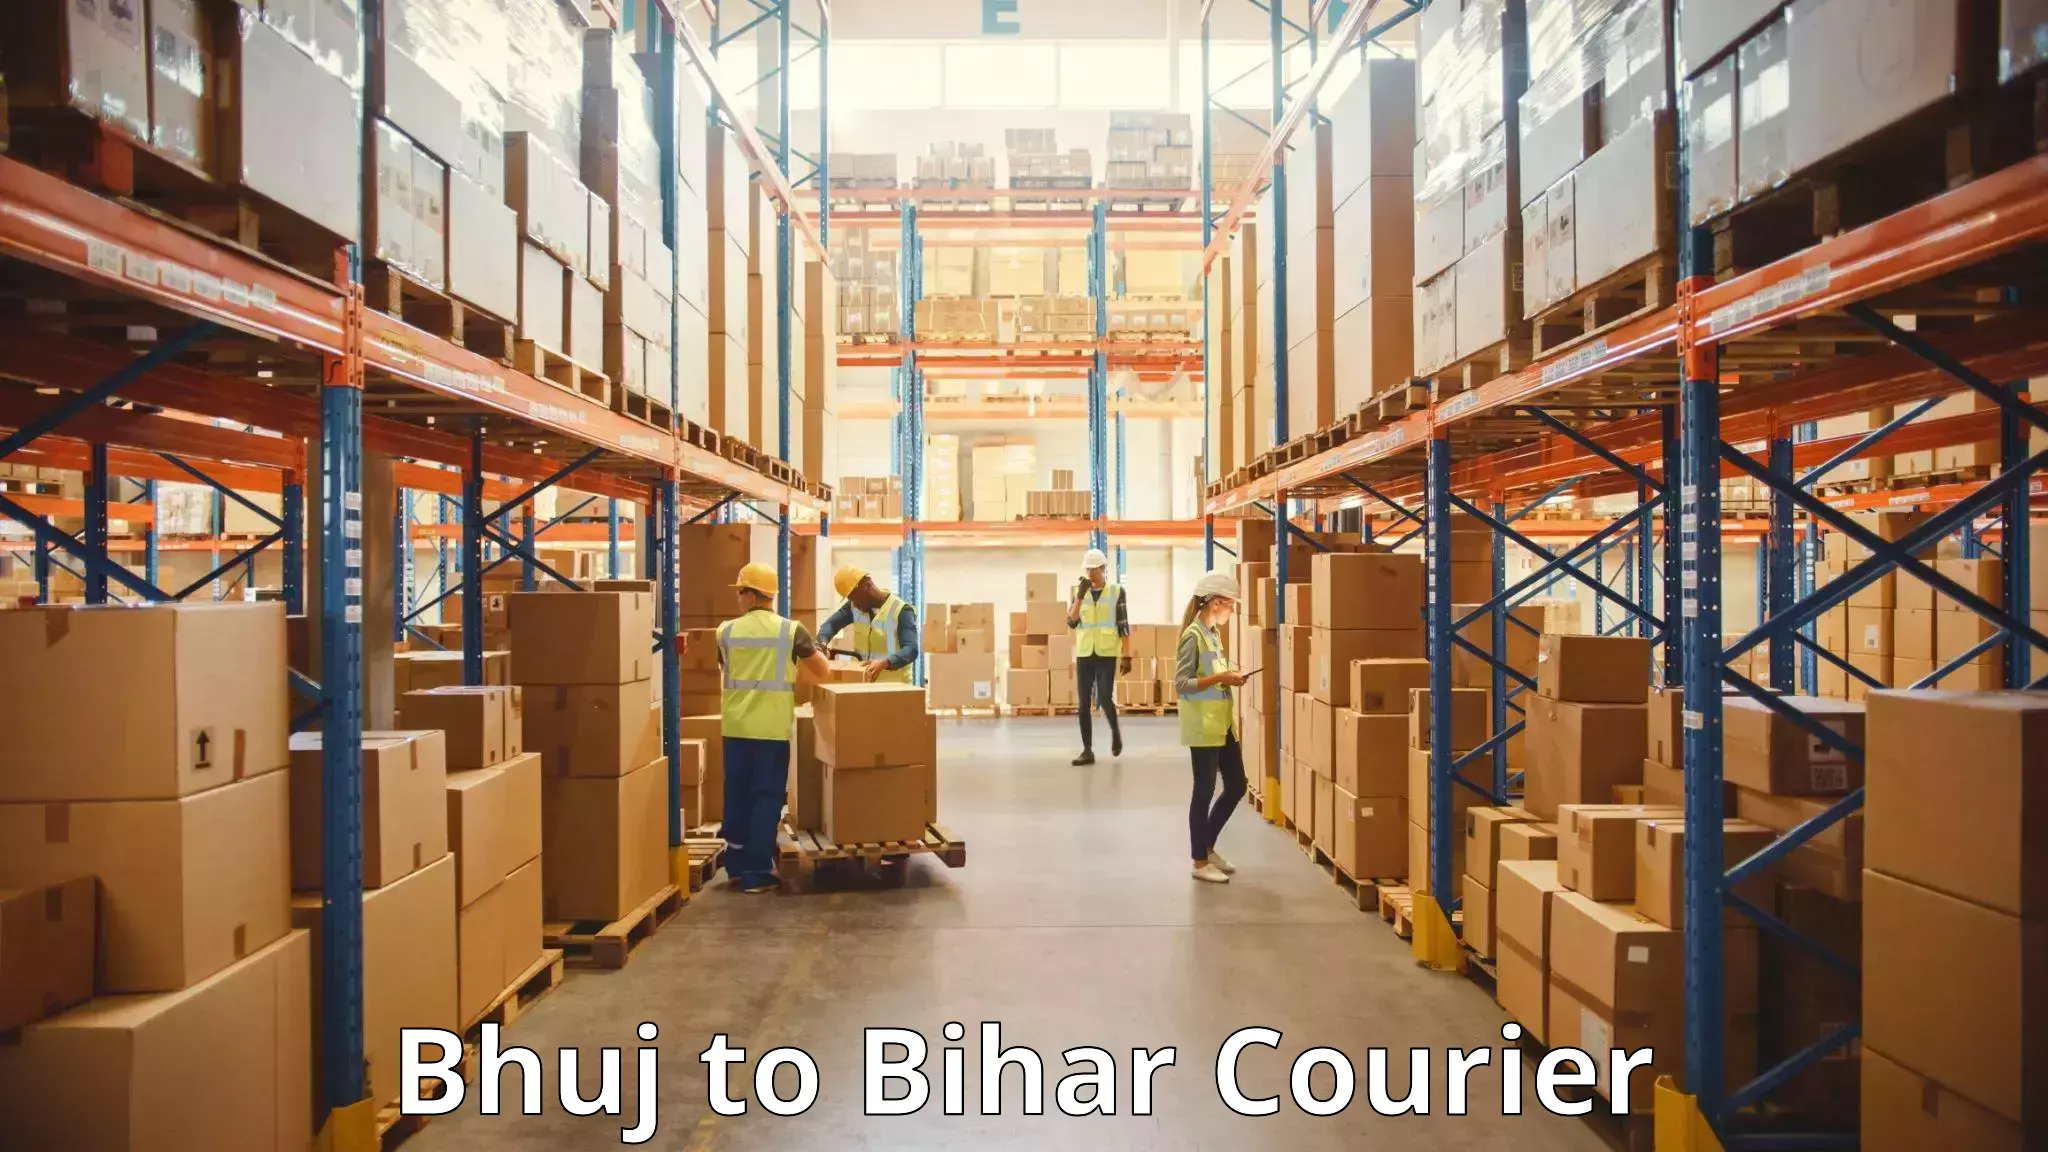 Baggage transport network Bhuj to Dighwara